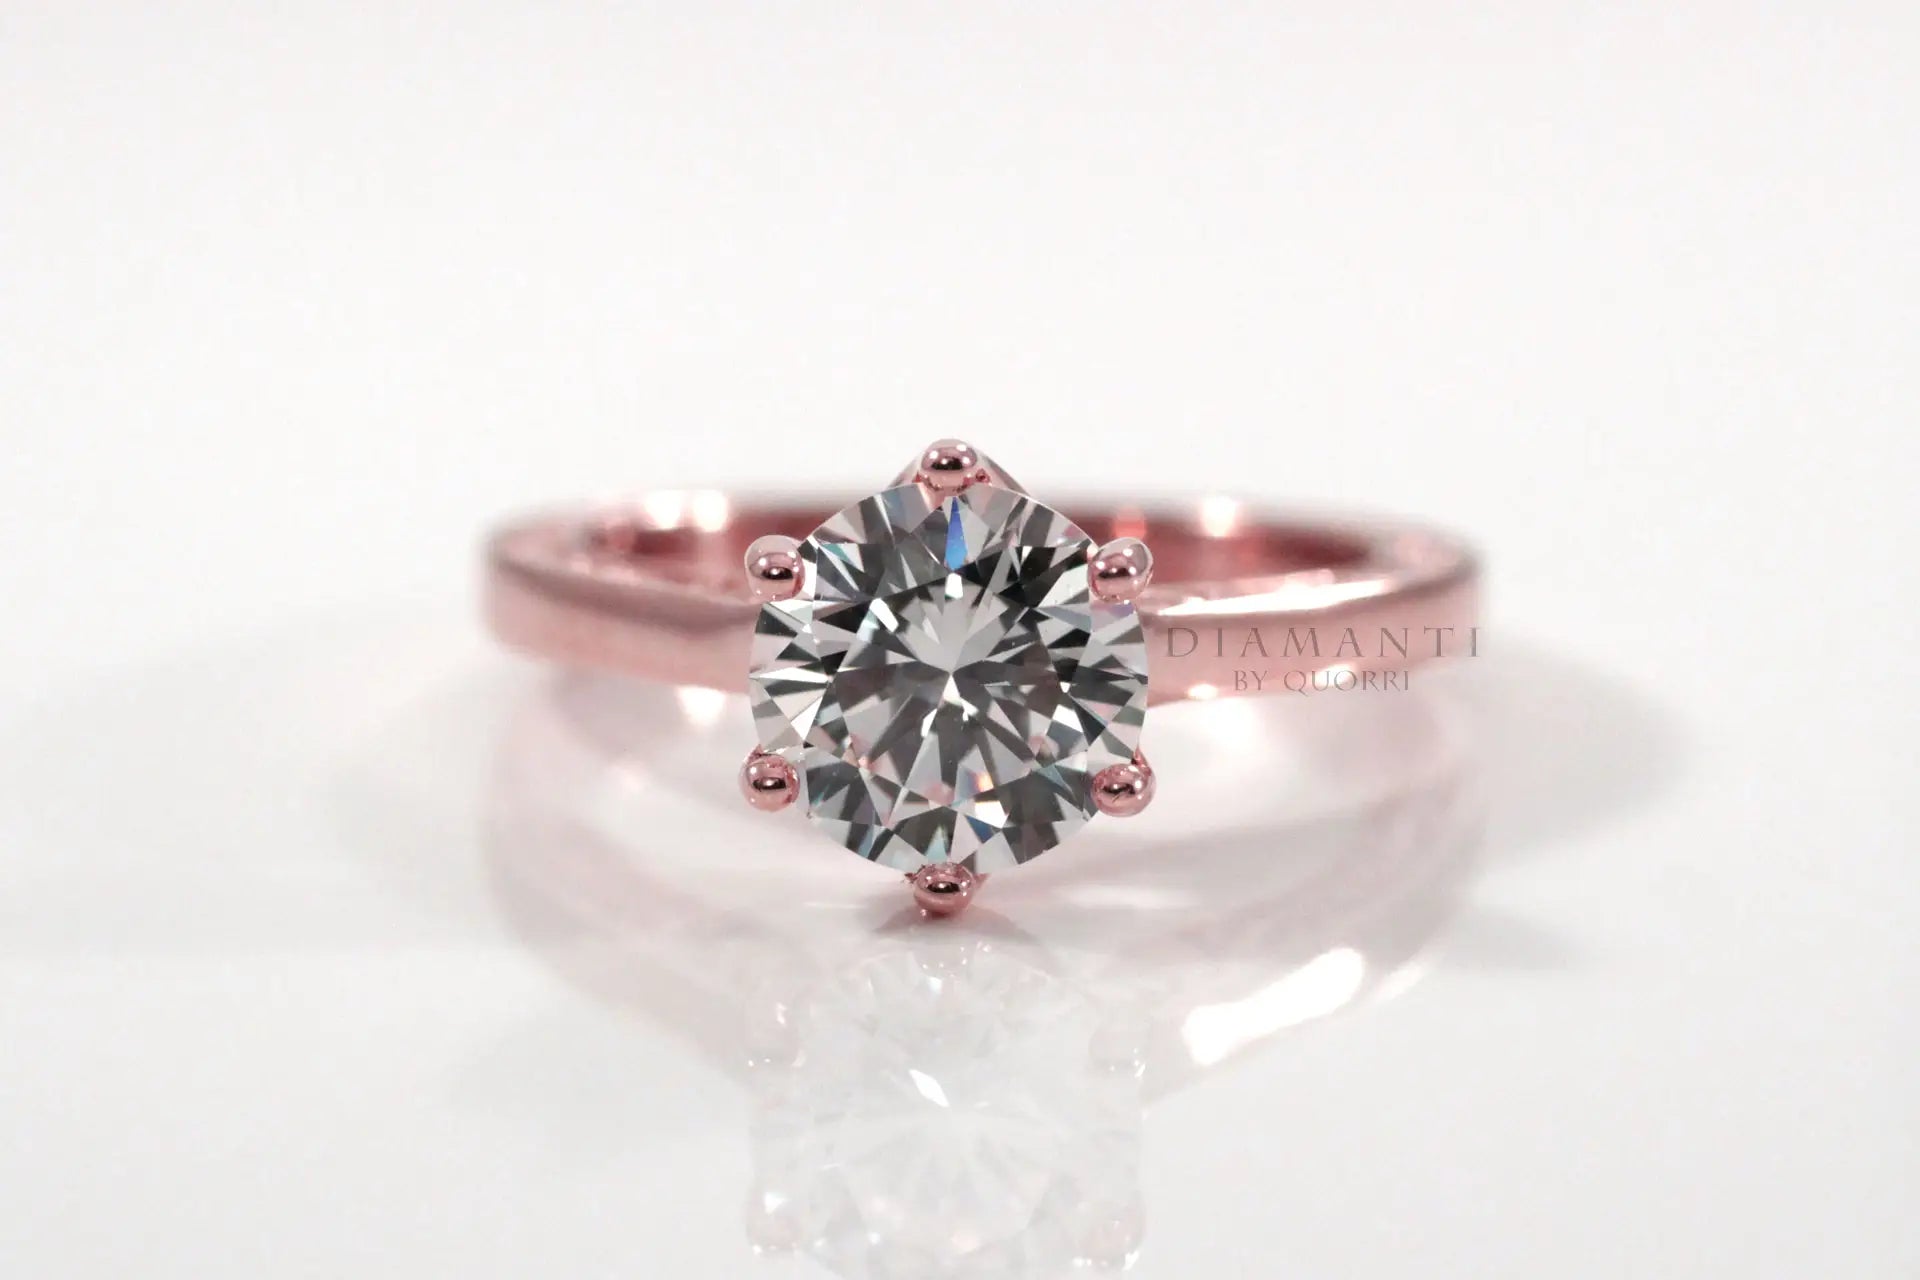 rose gold six prong rose motif 2ct round lab diamond engagement ring Quorri